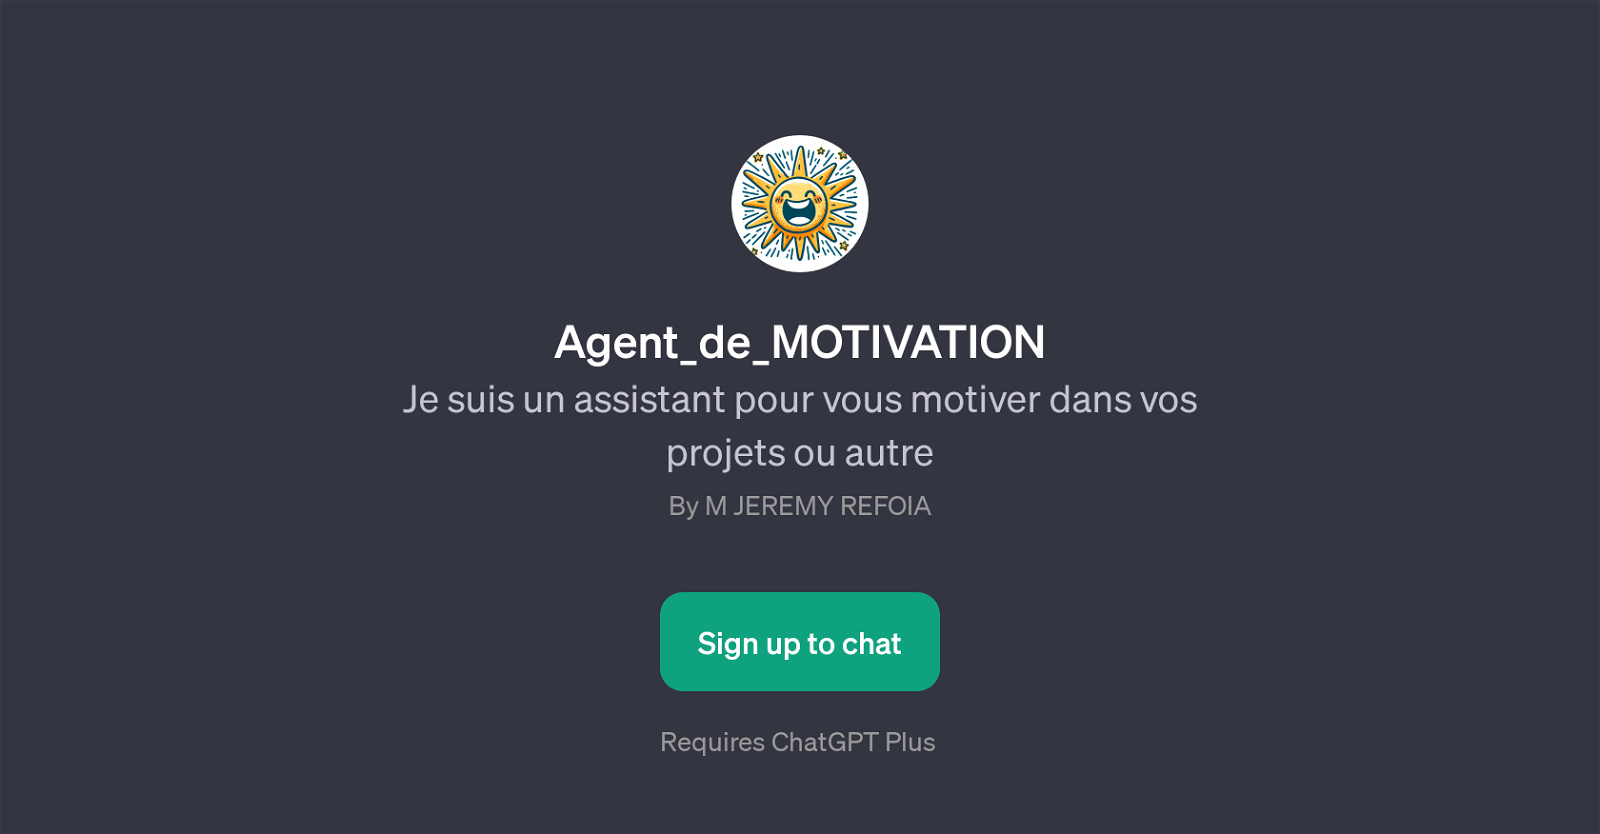 Agent_de_MOTIVATION website